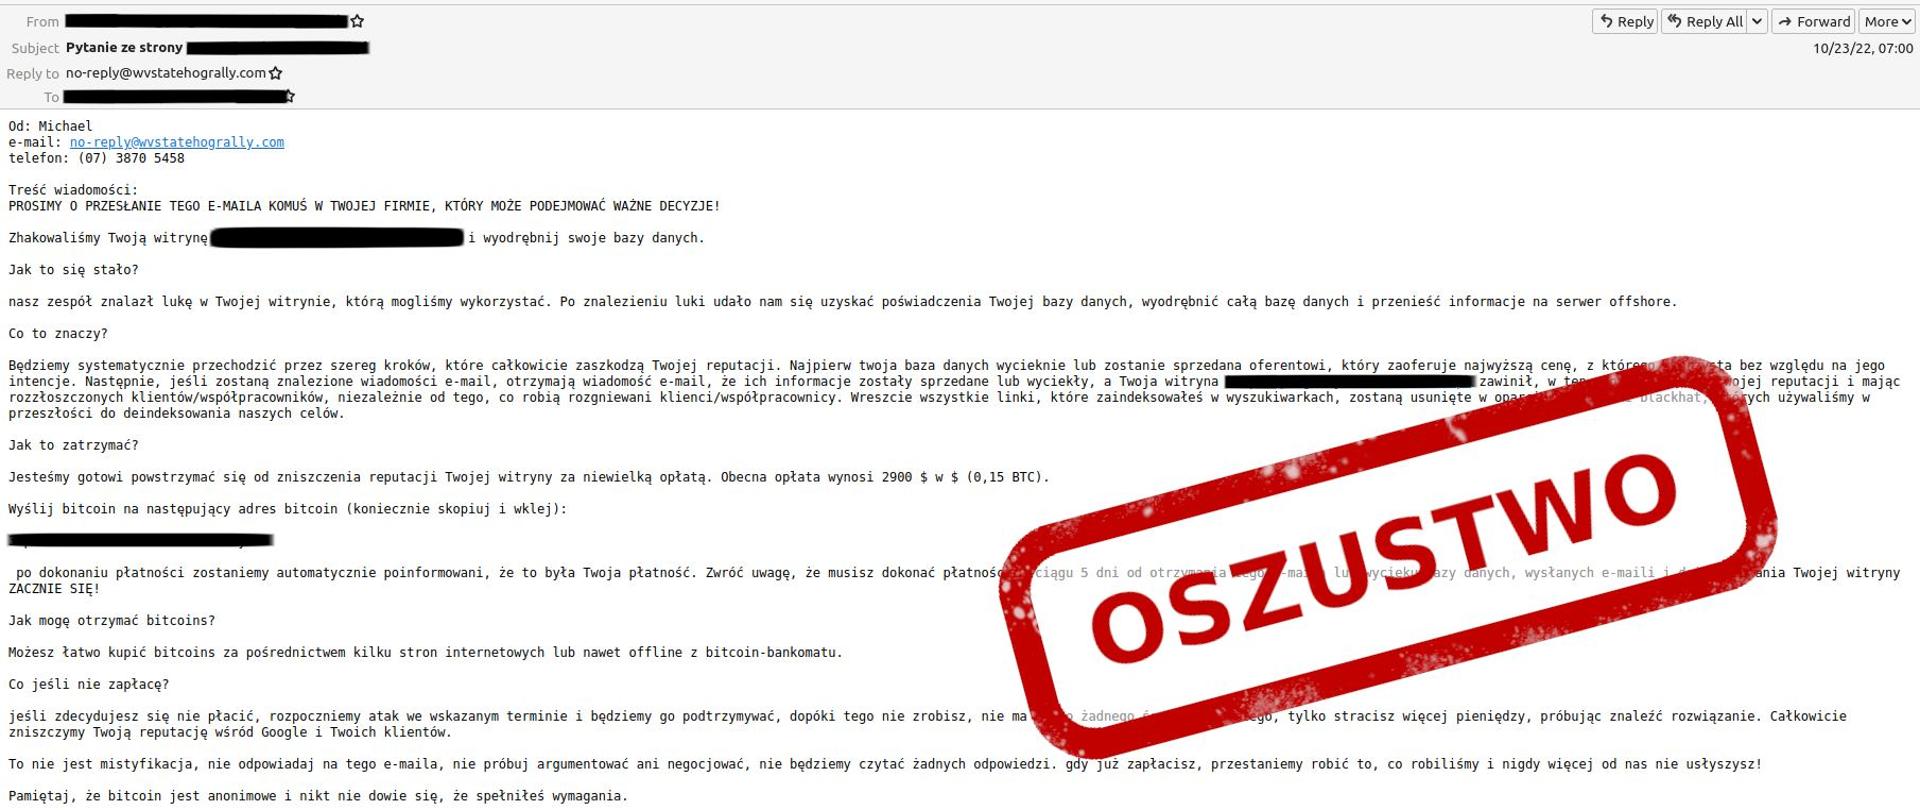 Zdjęcie fałszywej wiadomości e-mail po prawej stronie czerwony napis OSZUSTWO